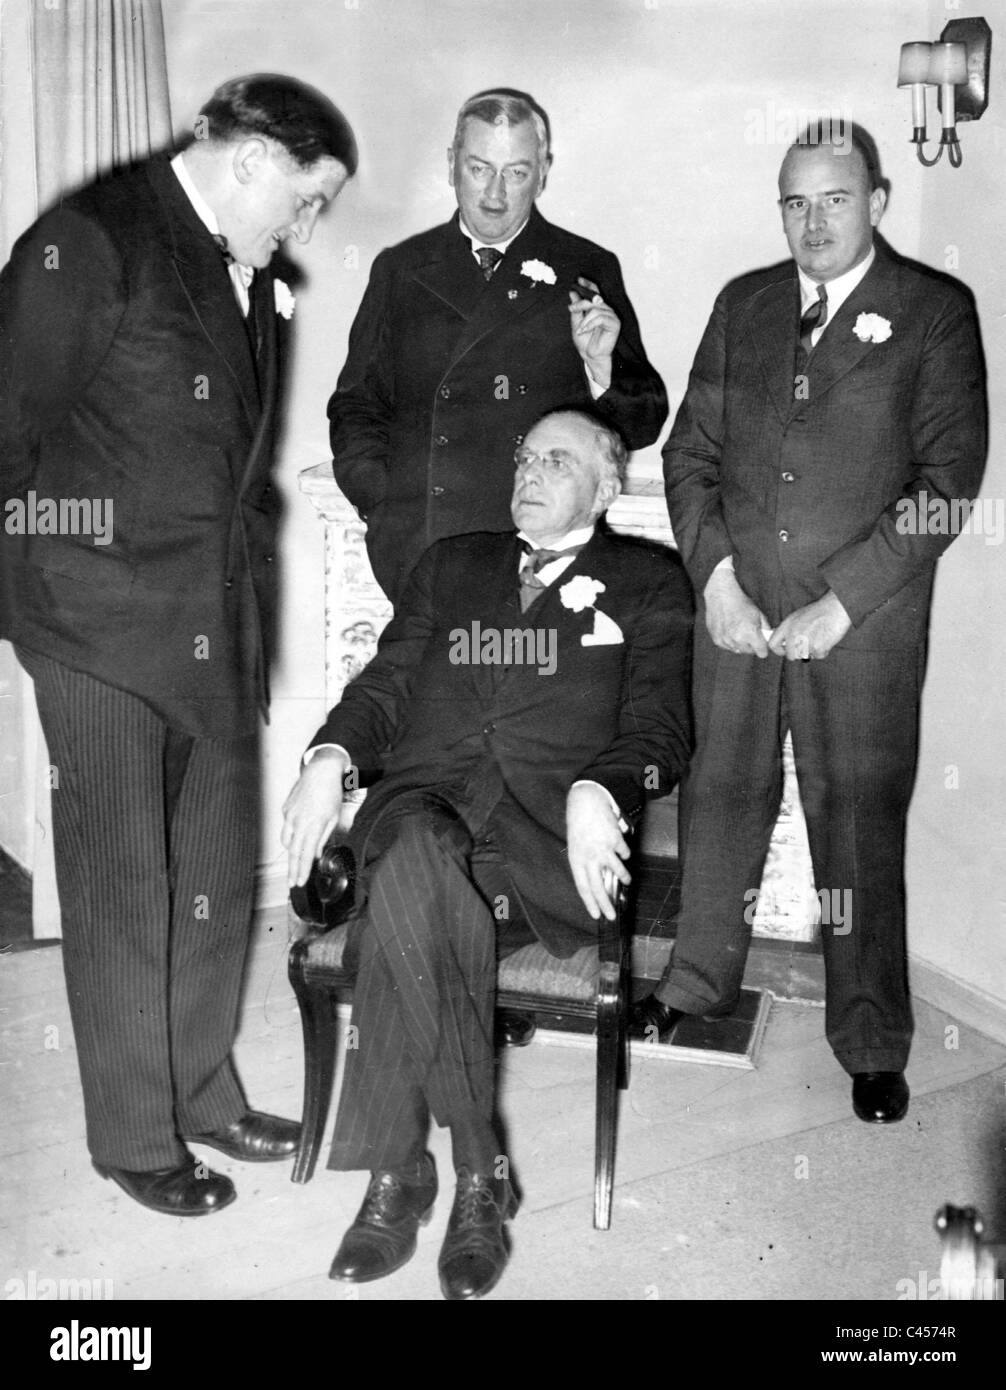 Ernst Hanfstaengl, Dr. Guertner, Dr. Frank and Kenneth Brown, 1935 Stock Photo